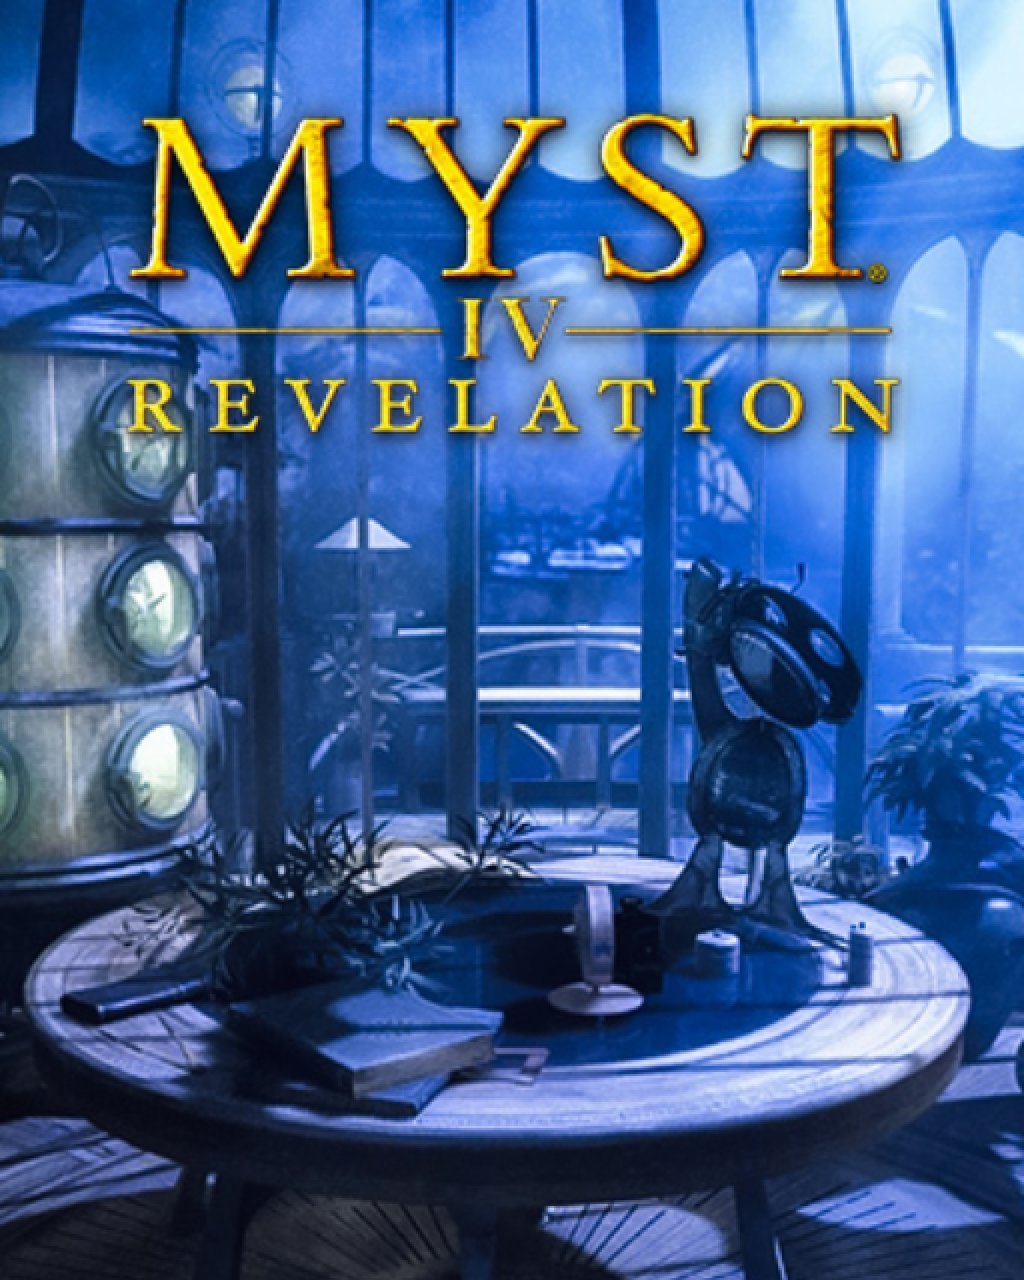 Myst IV Revelation